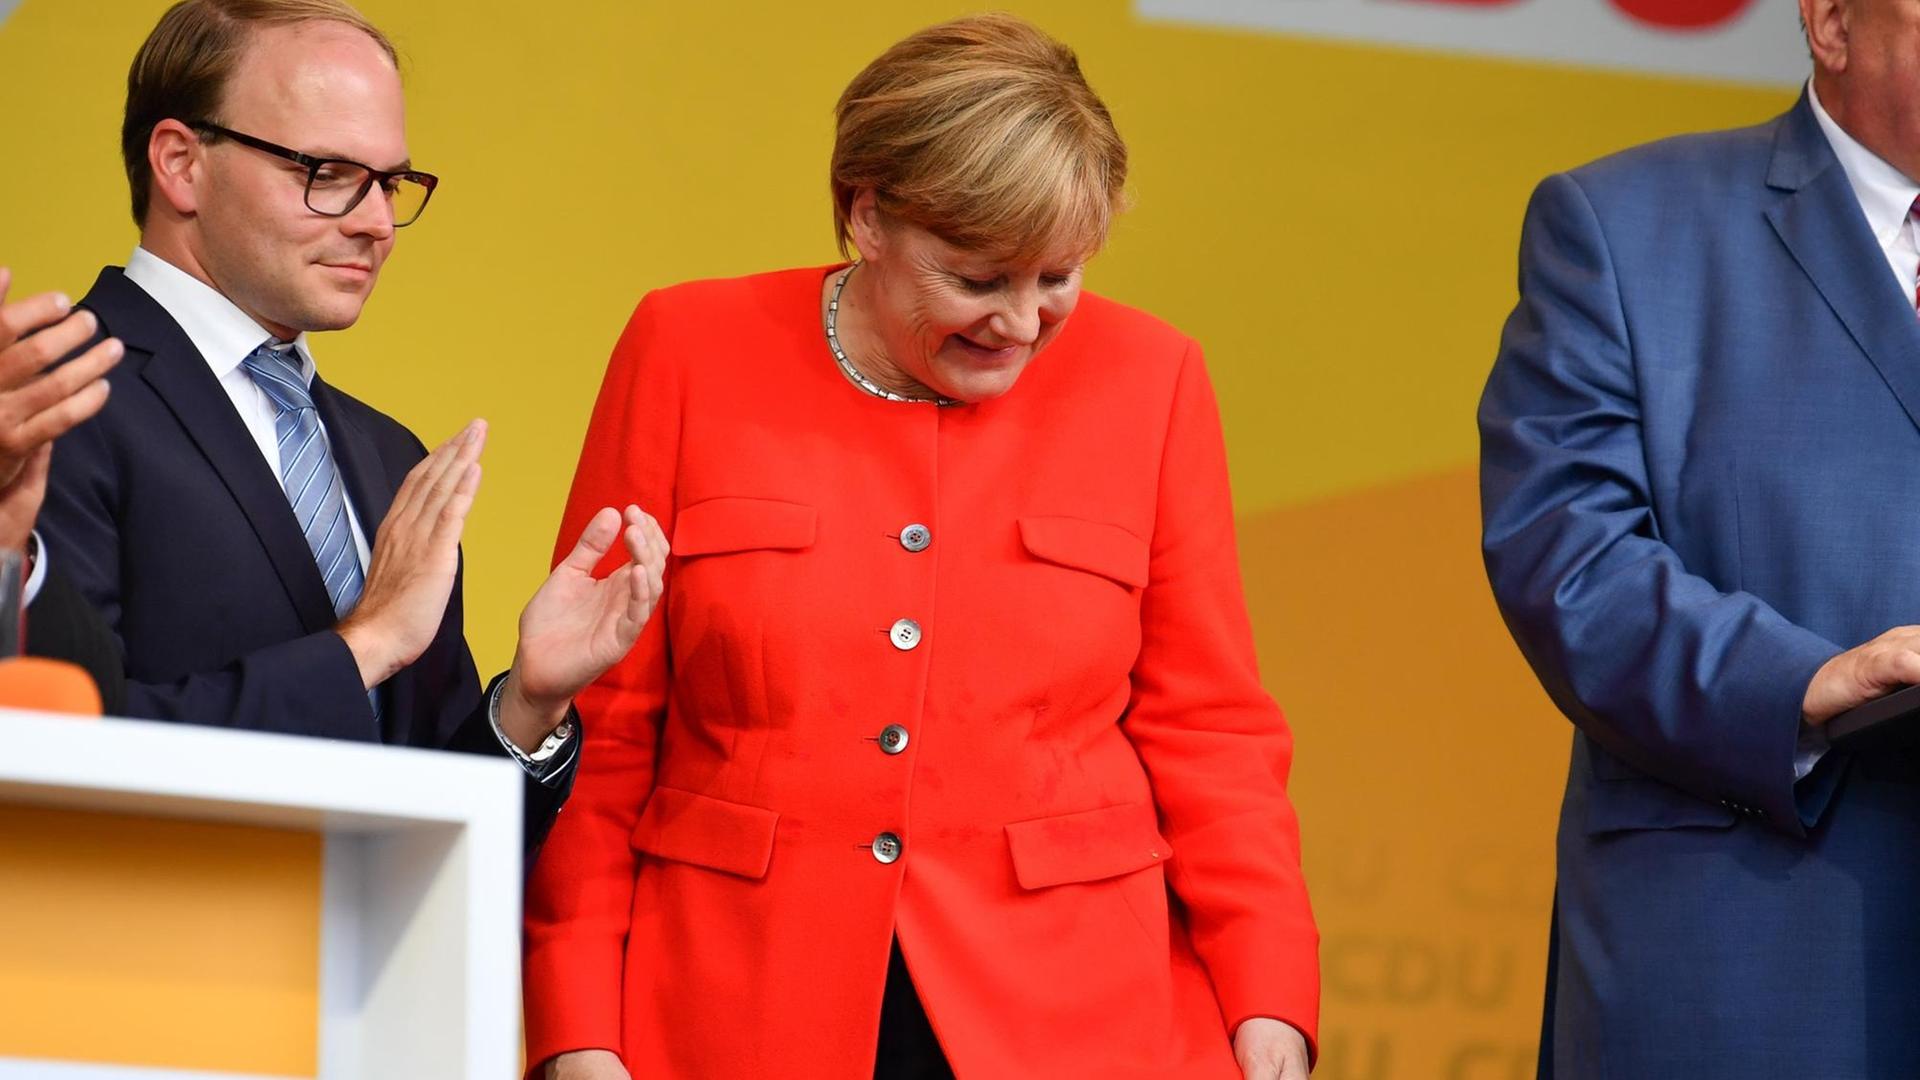 Bundeskanzlerin Angela Merkel schaut bei einer Wahlkampfveranstaltung auf einen Fleck auf ihrer Jacke. Ein Tisch, der vor ihr stand, war von einem Gegenstand aus den Reihen des Publikums getroffen worden, dabei waren Spritzer auf Merkels Jackett gekommen. Links steht der Vorsitzende der CDU Heidelberg, Alexander Föhr